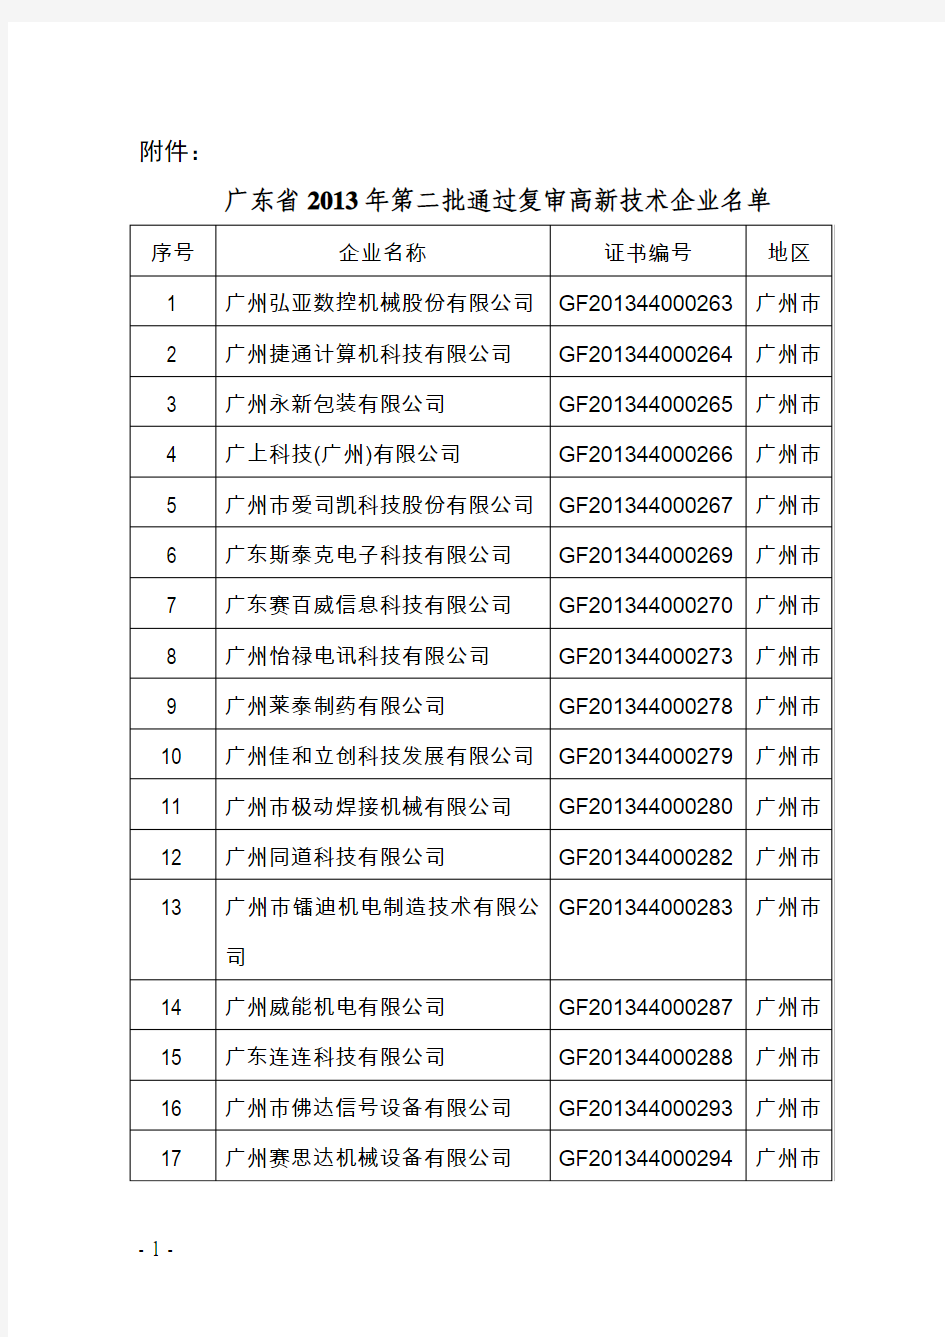 广东省2013年第二批通过复审高新技术企业名单(185家)